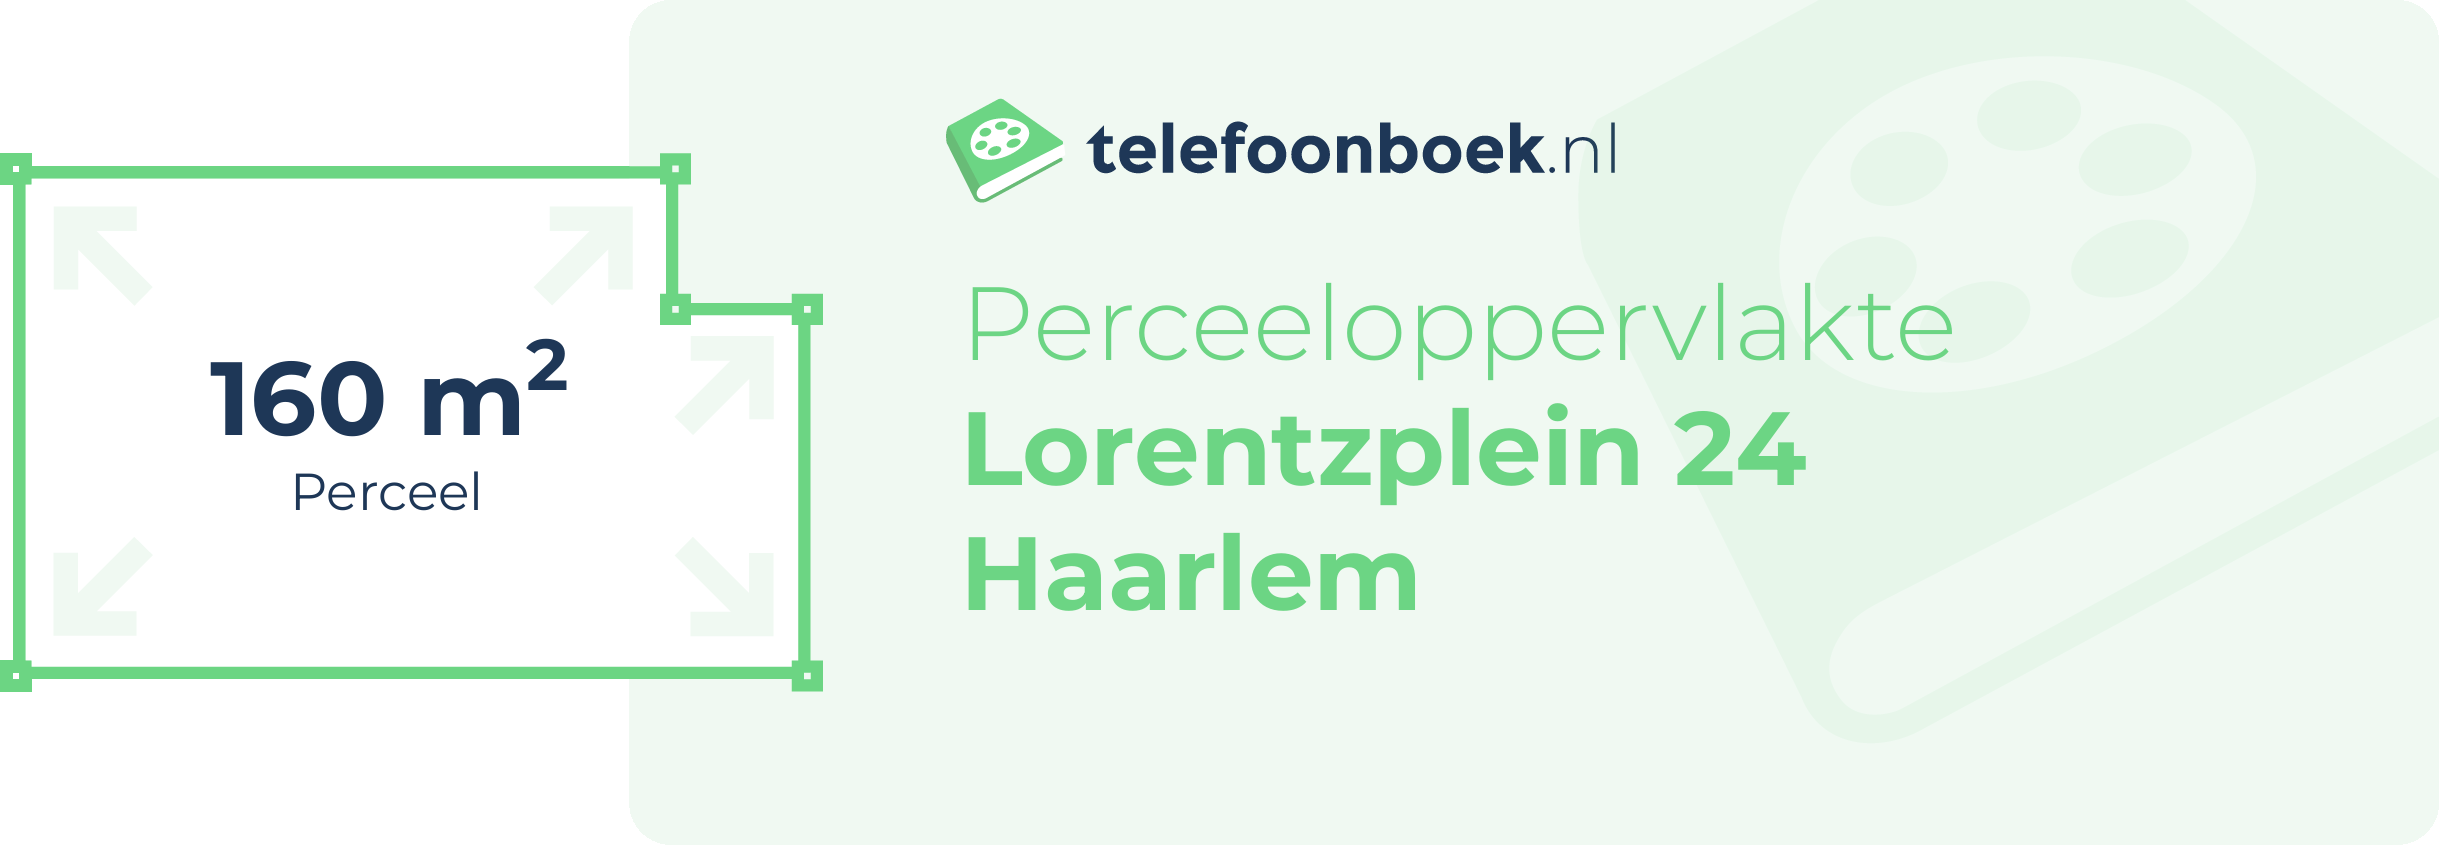 Perceeloppervlakte Lorentzplein 24 Haarlem